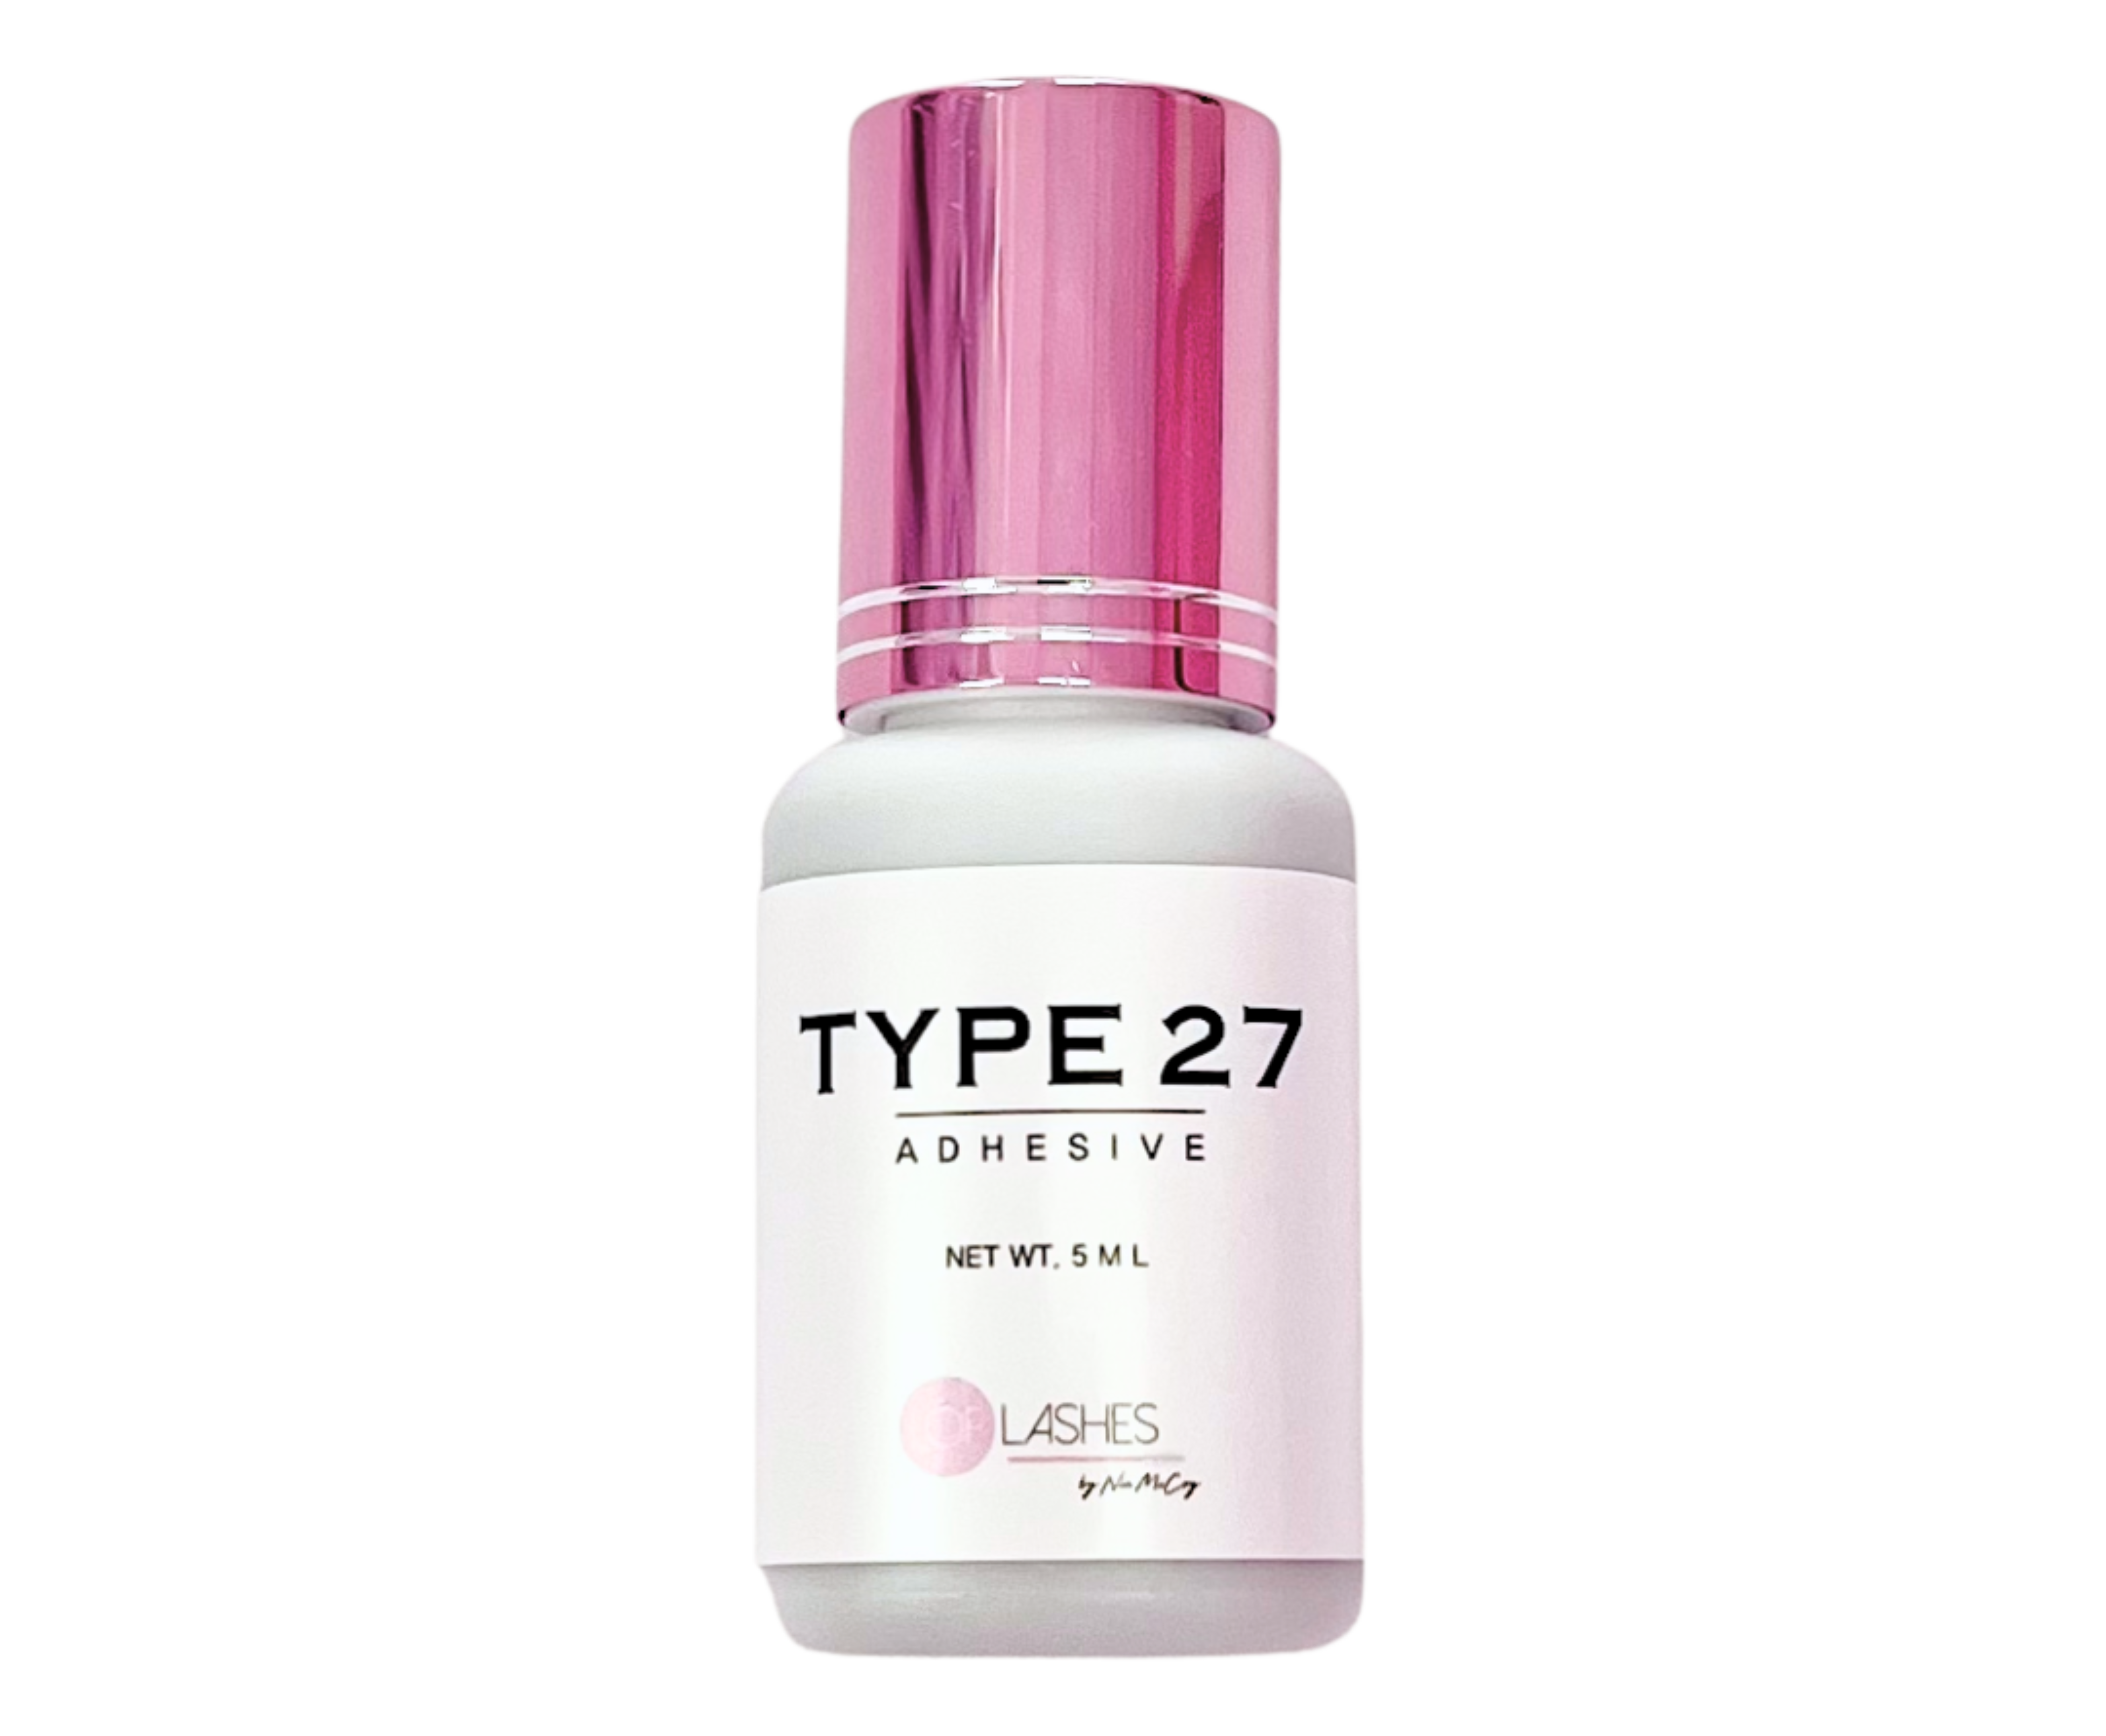 Type 27 Adhesive